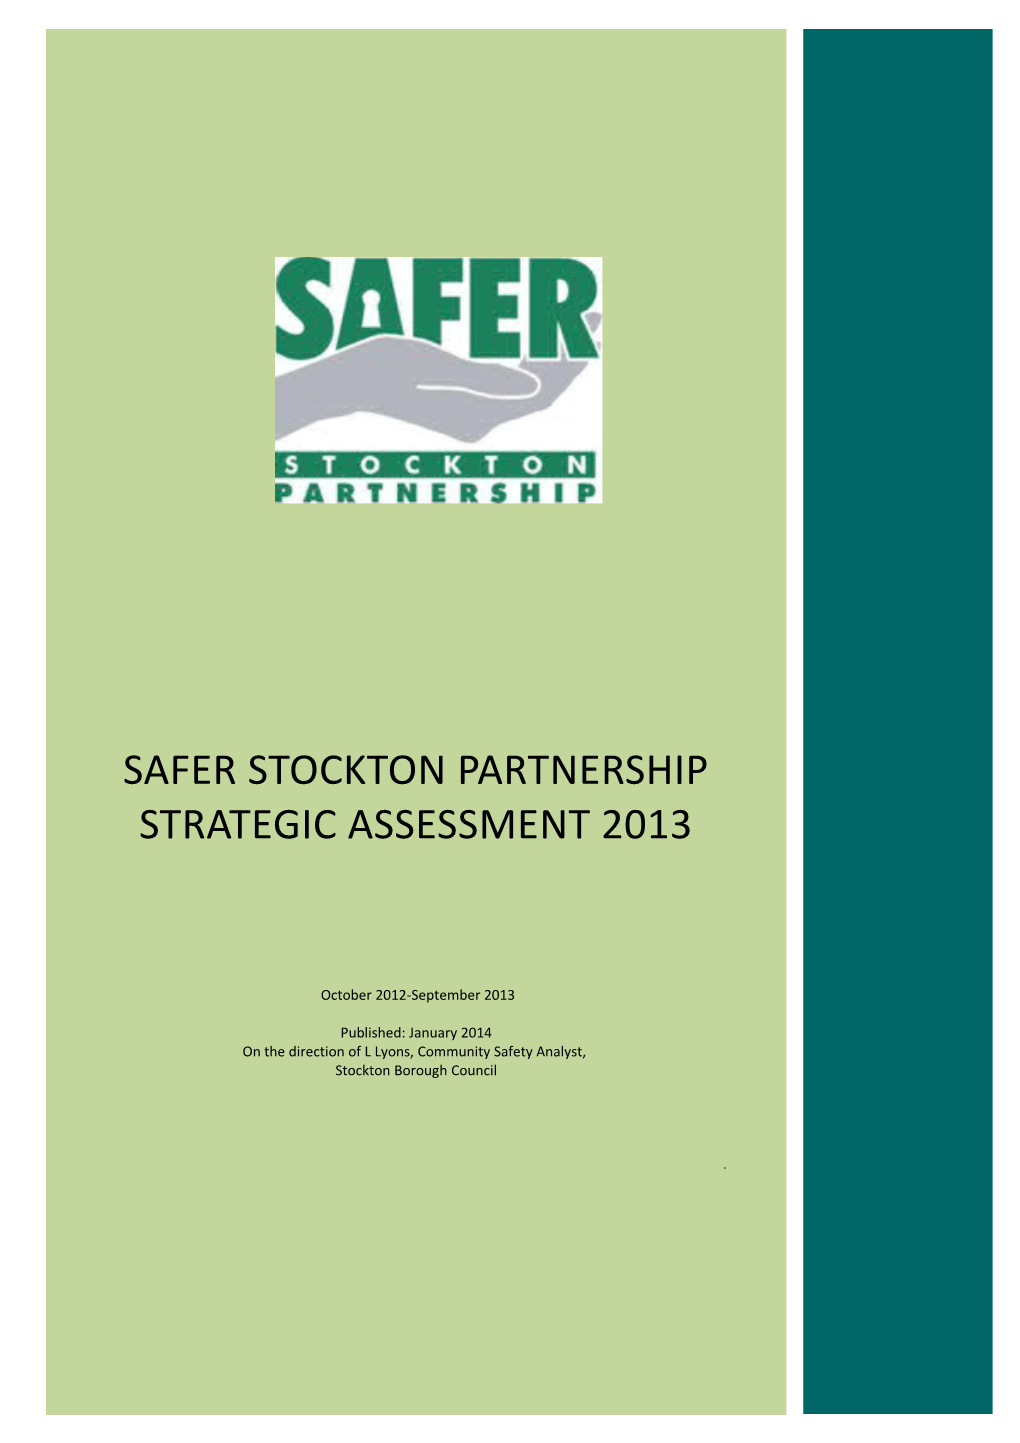 Partnership Strategic Assessment